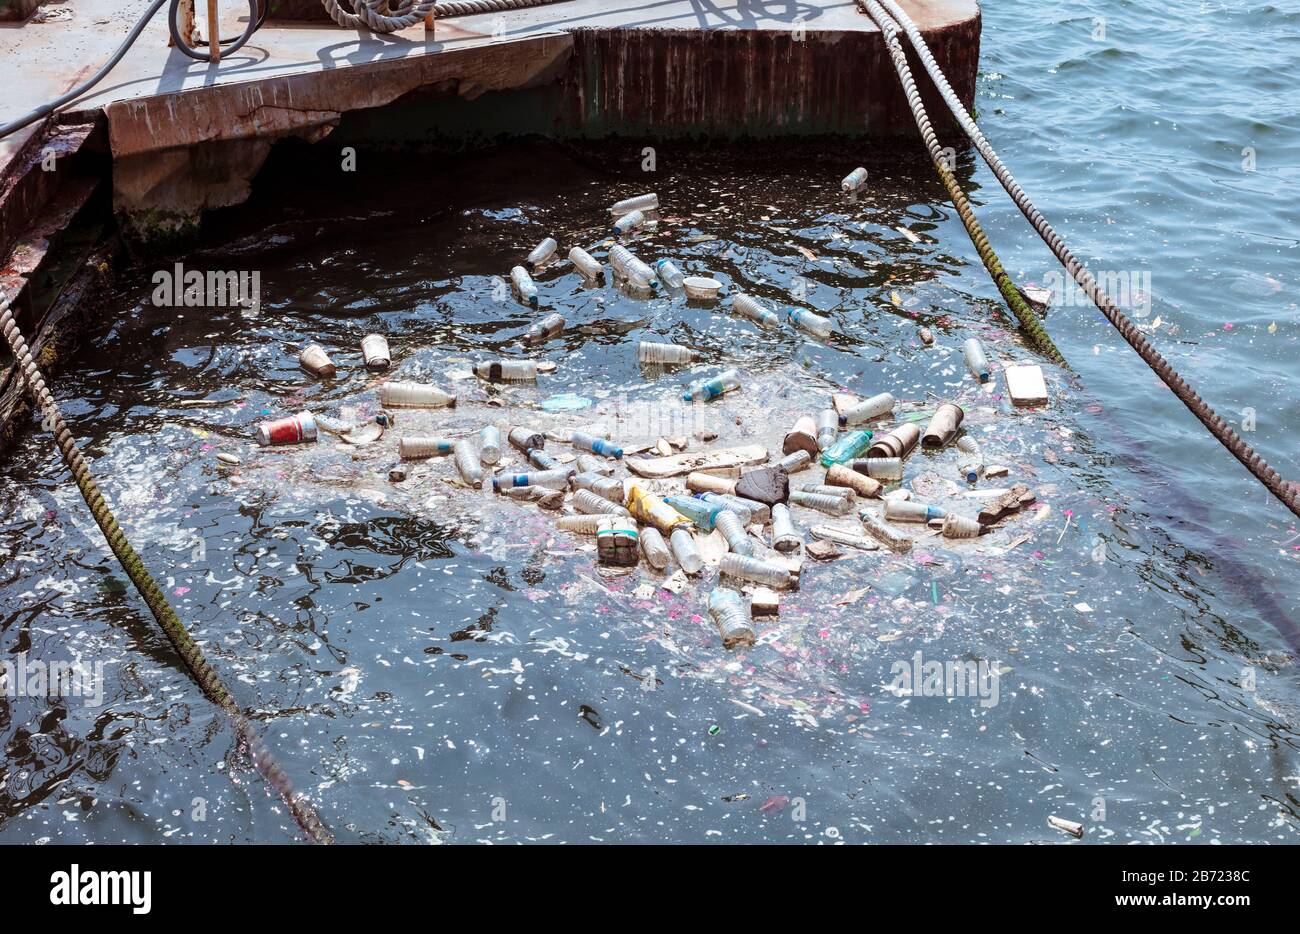 bouteilles en plastique, sacs, déchets flottants dans l'eau. Concept de pollution de l'eau de mer. Crise de la pollution plastique Banque D'Images